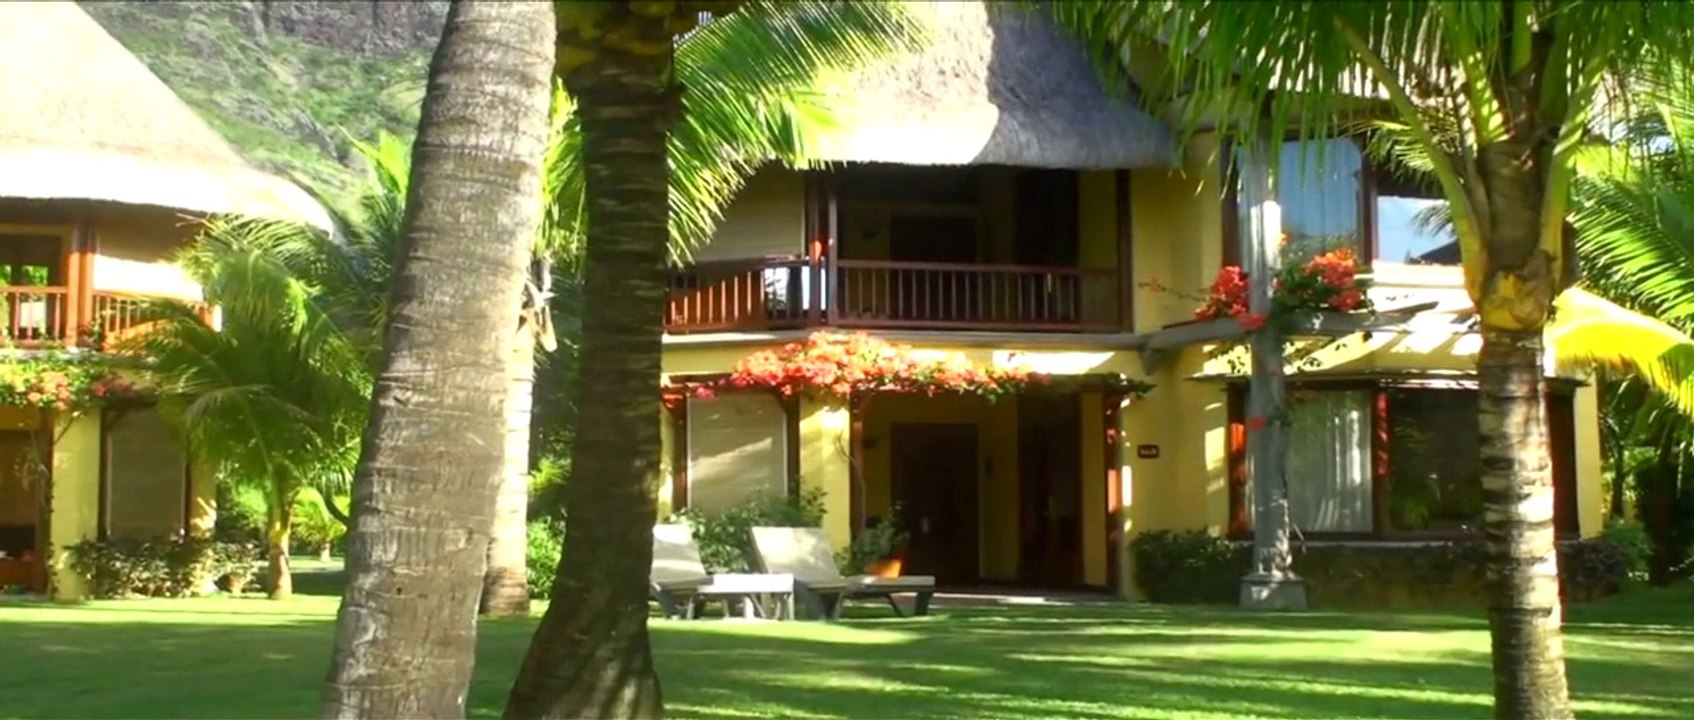 Luxushotel Strandhotel Traumurlaub  Dinarobin Hotel Golf & Spa - Mauritius - Club Junior Suite Beach Front